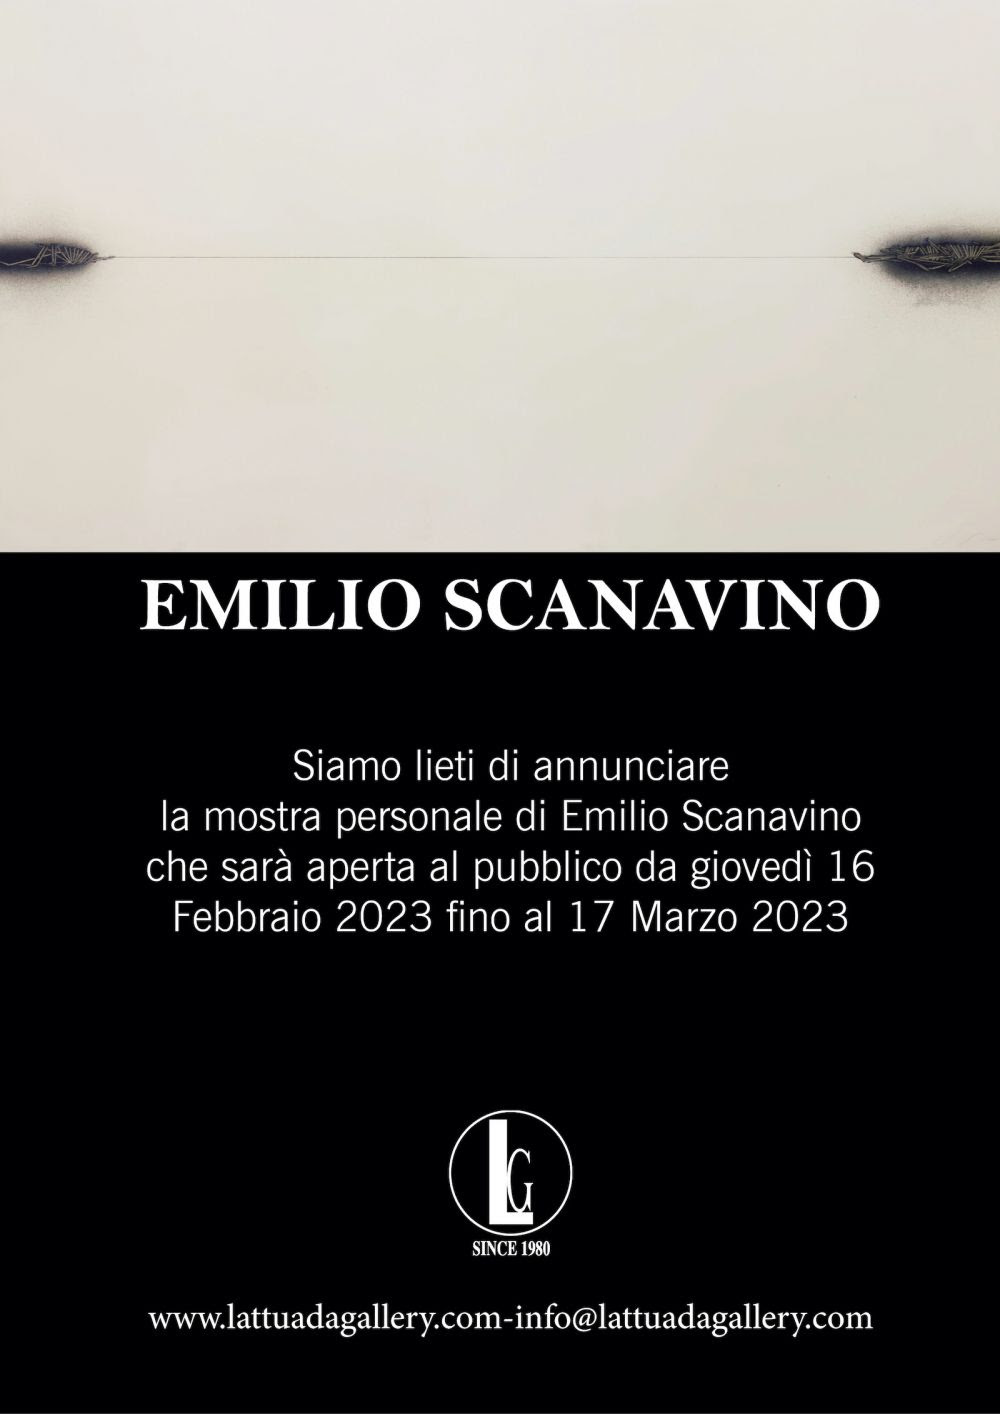 Emilio Scanavino - Personal Solo